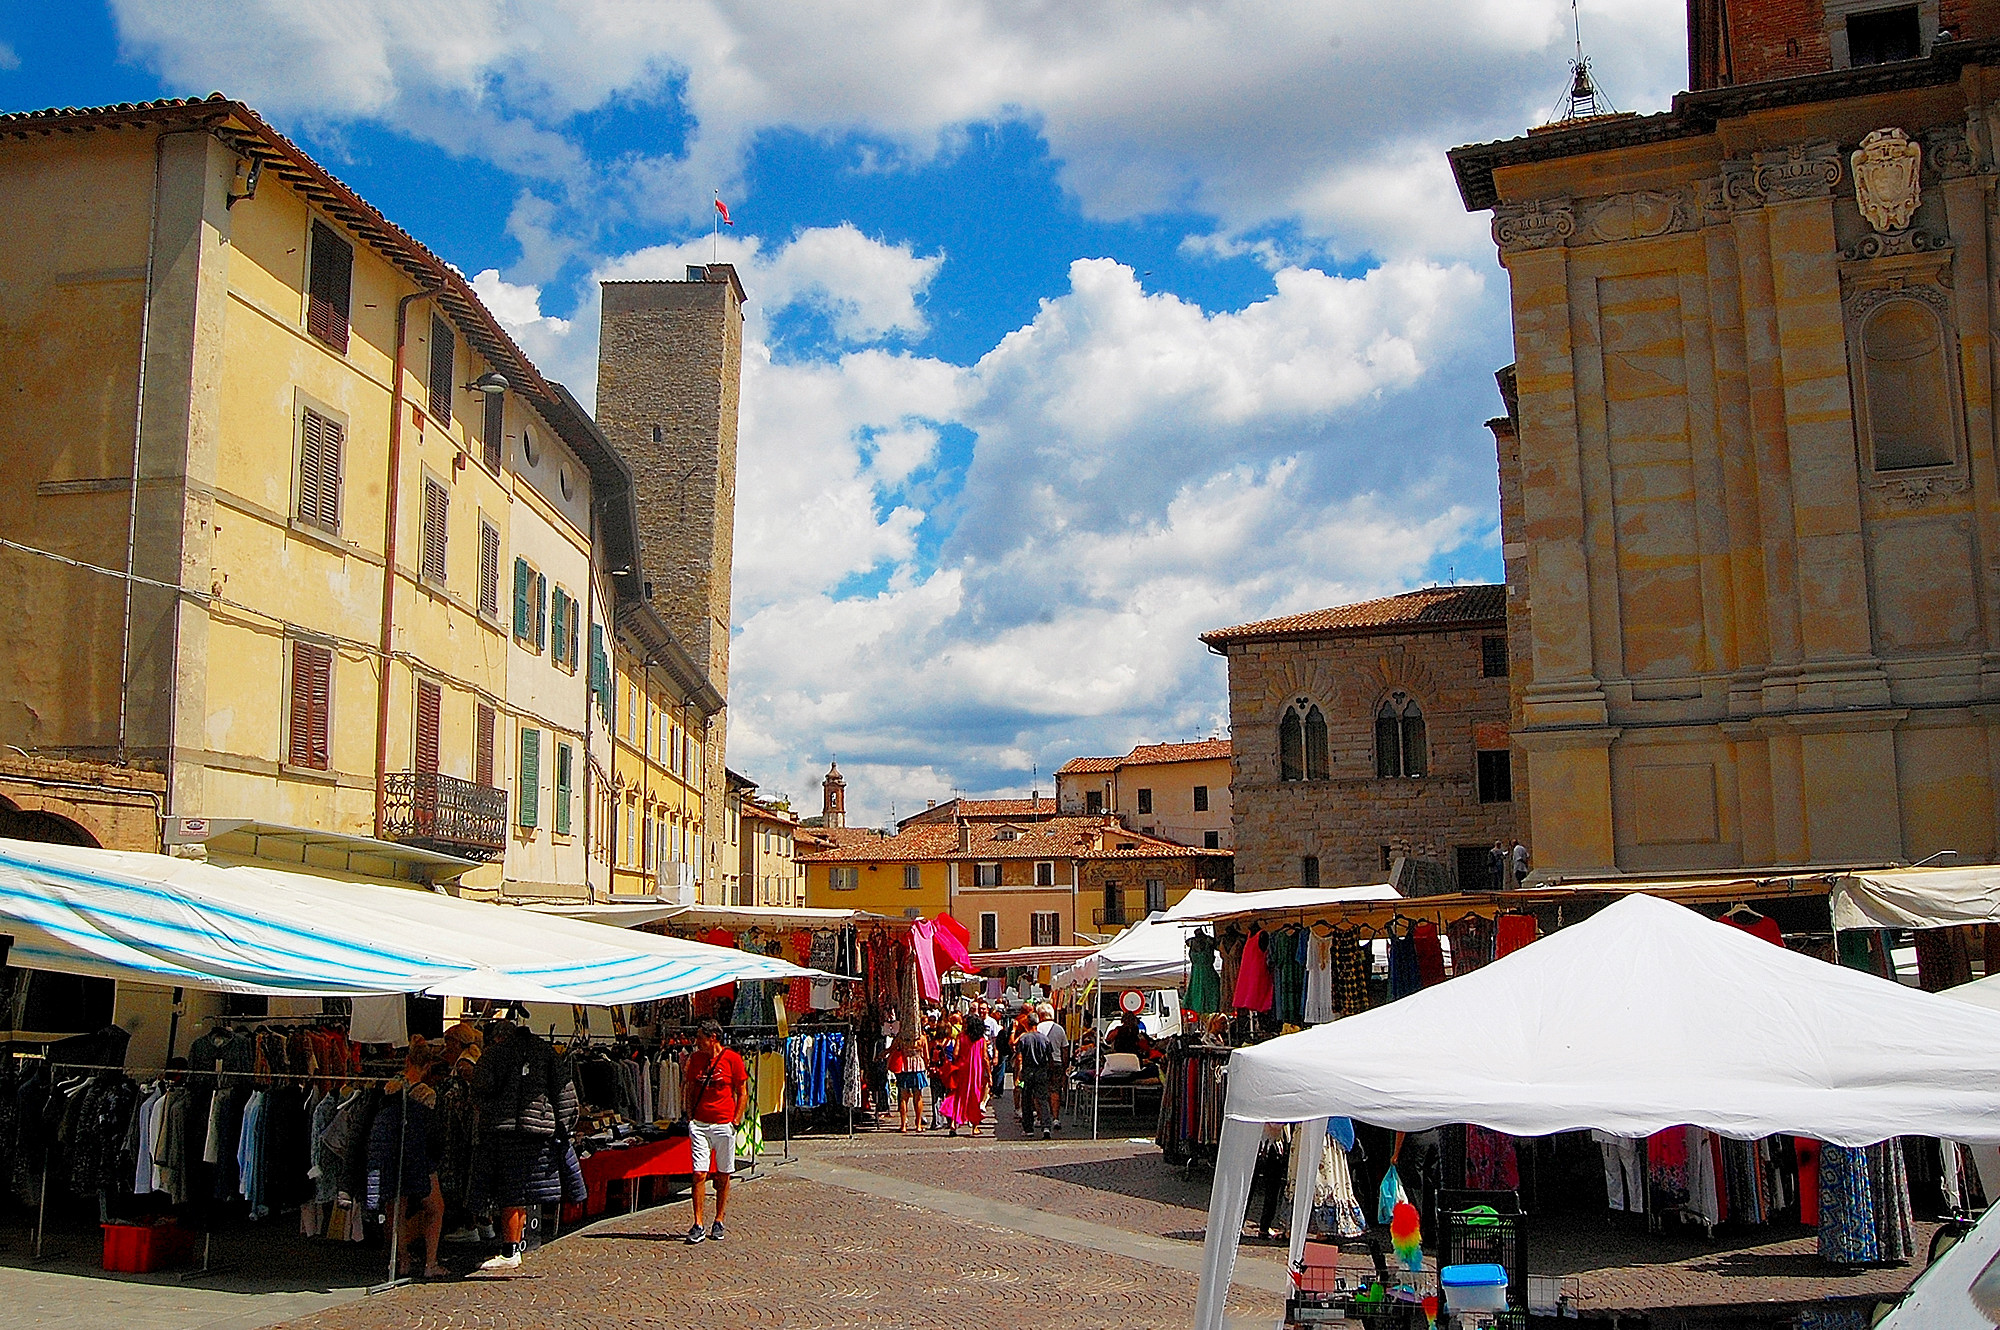 Città di Castello (Umbria): the Saturday market...